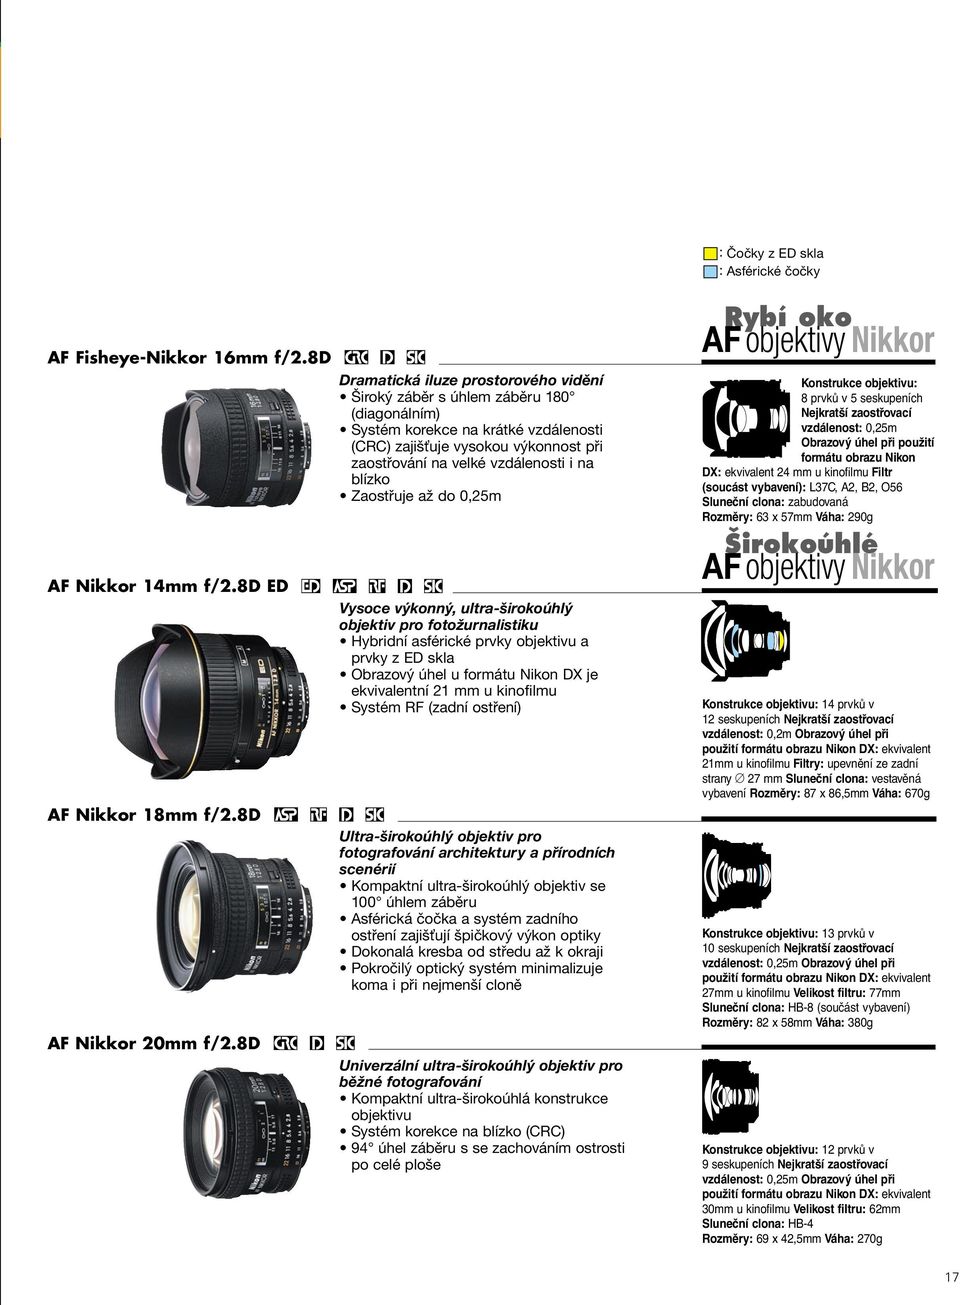 i na blízko Zaostřuje až do 0,25m Vysoce výkonný, ultra-širokoúhlý objektiv pro fotožurnalistiku Hybridní asférické prvky objektivu a prvky z ED skla Obrazový úhel u formátu Nikon DX je ekvivalentní